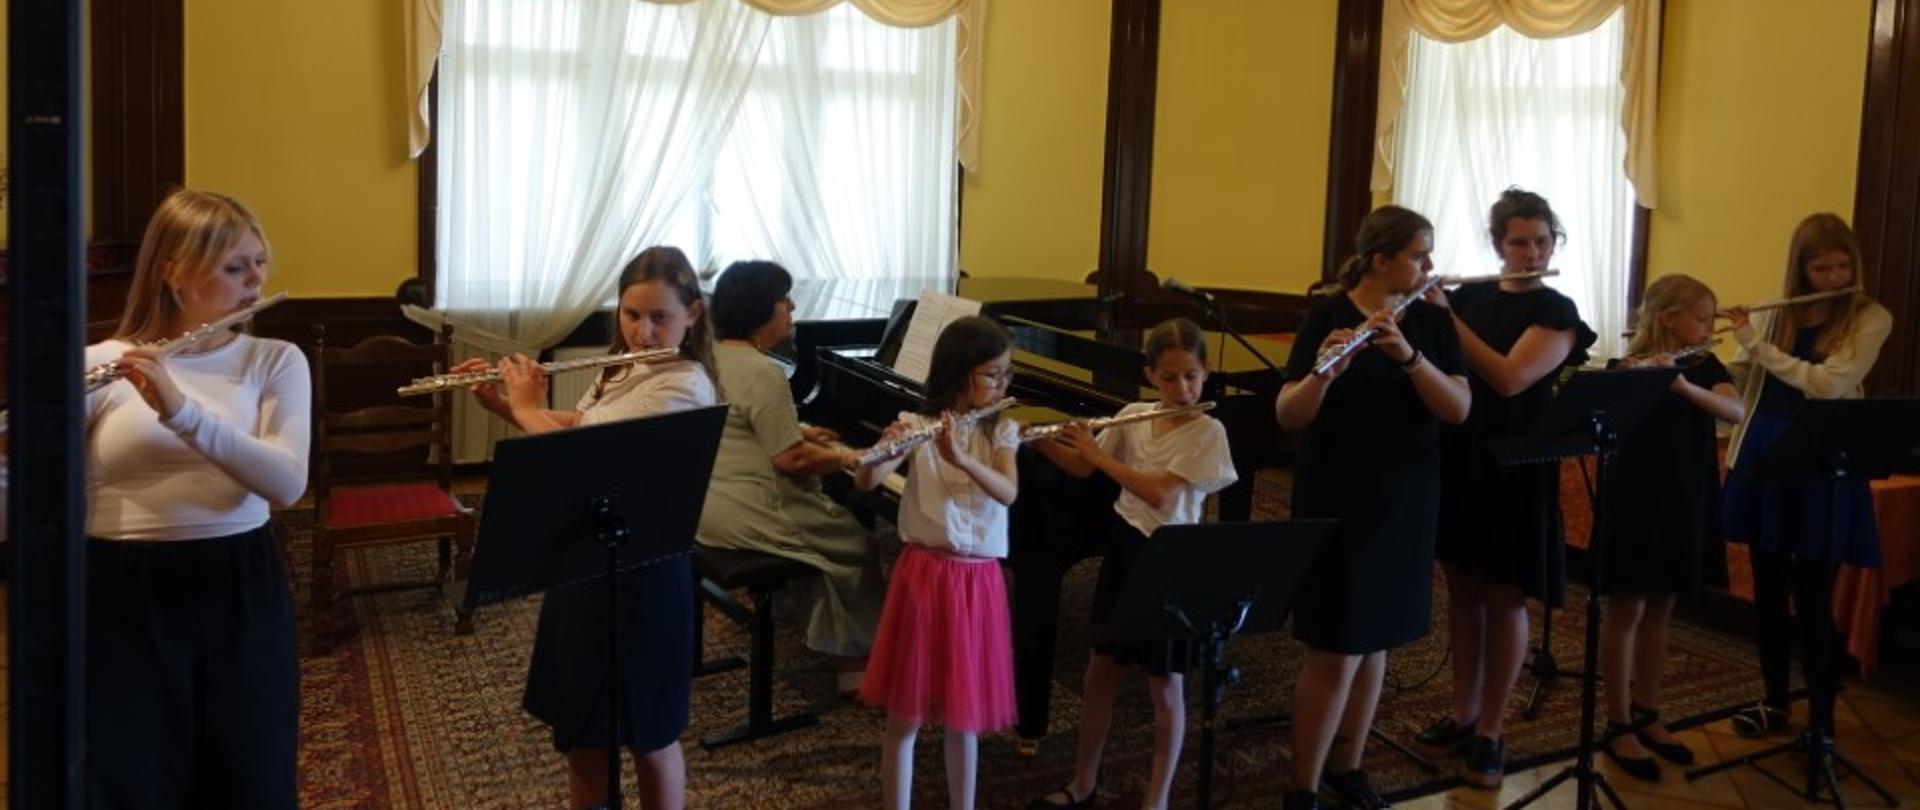 Zdjęcie kolorowe. Grupa dzieci grających na fletach. W tle akompaniator przy fortepianie.